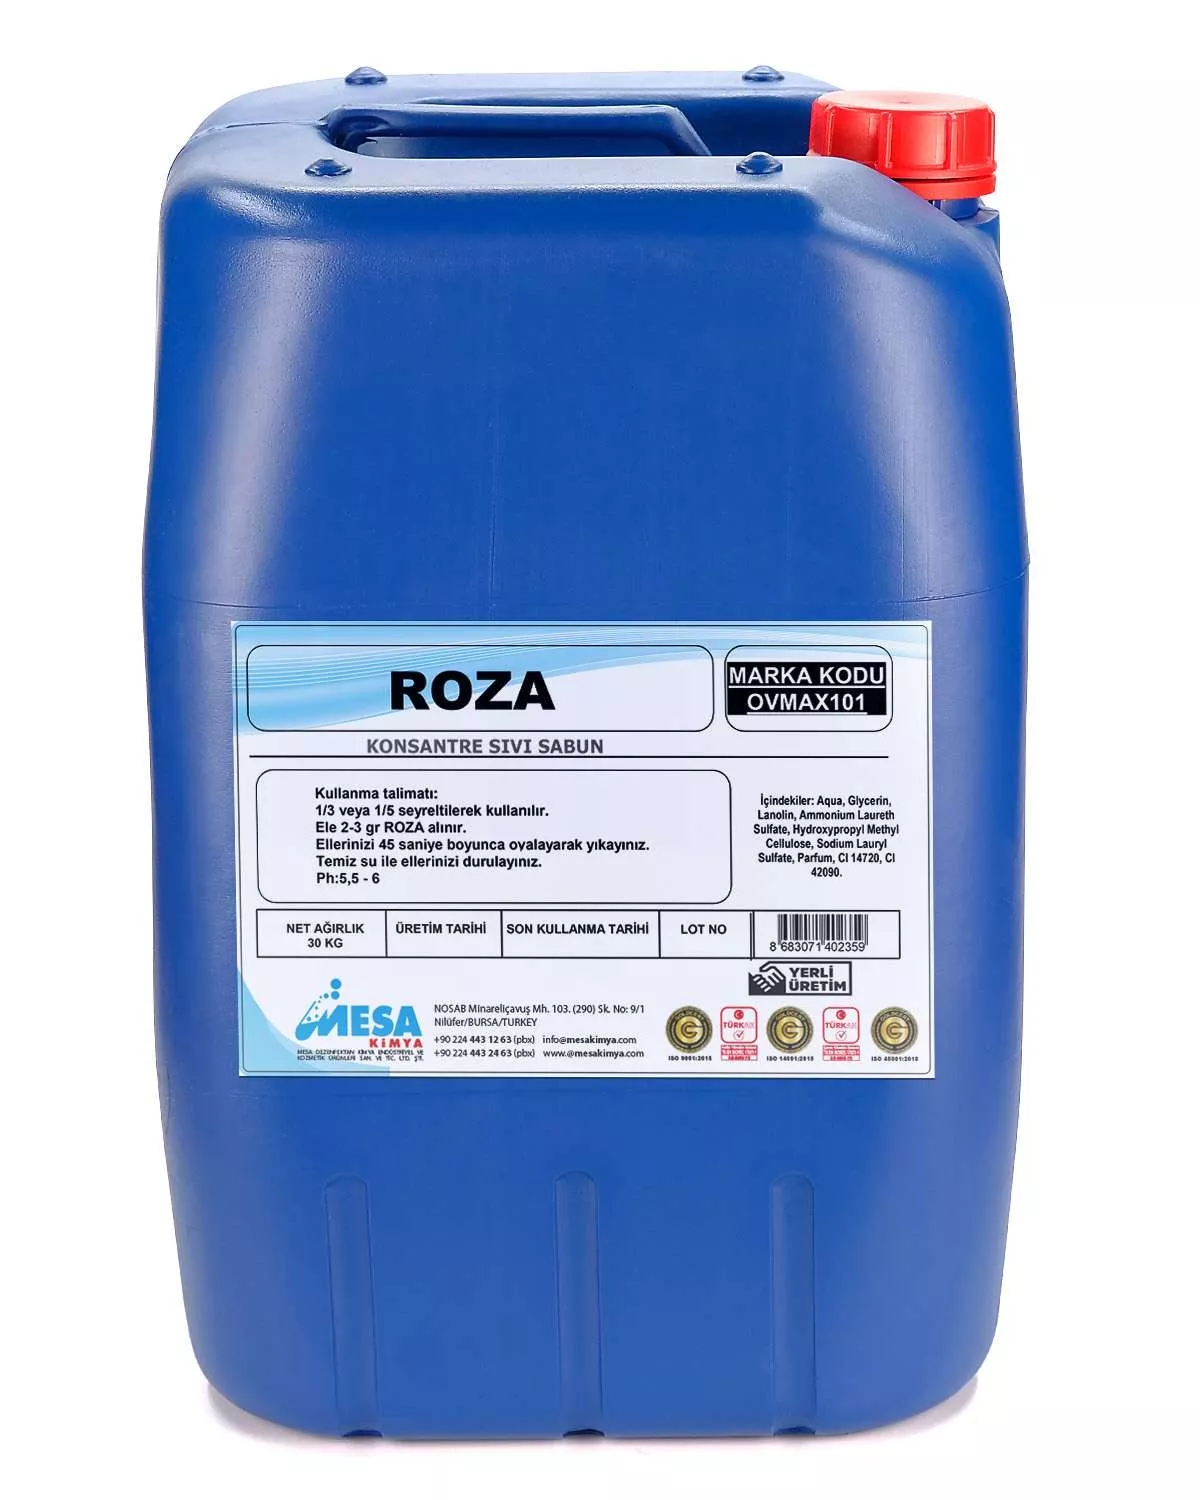 Konsantre sıvı sabun Roza 30 kg